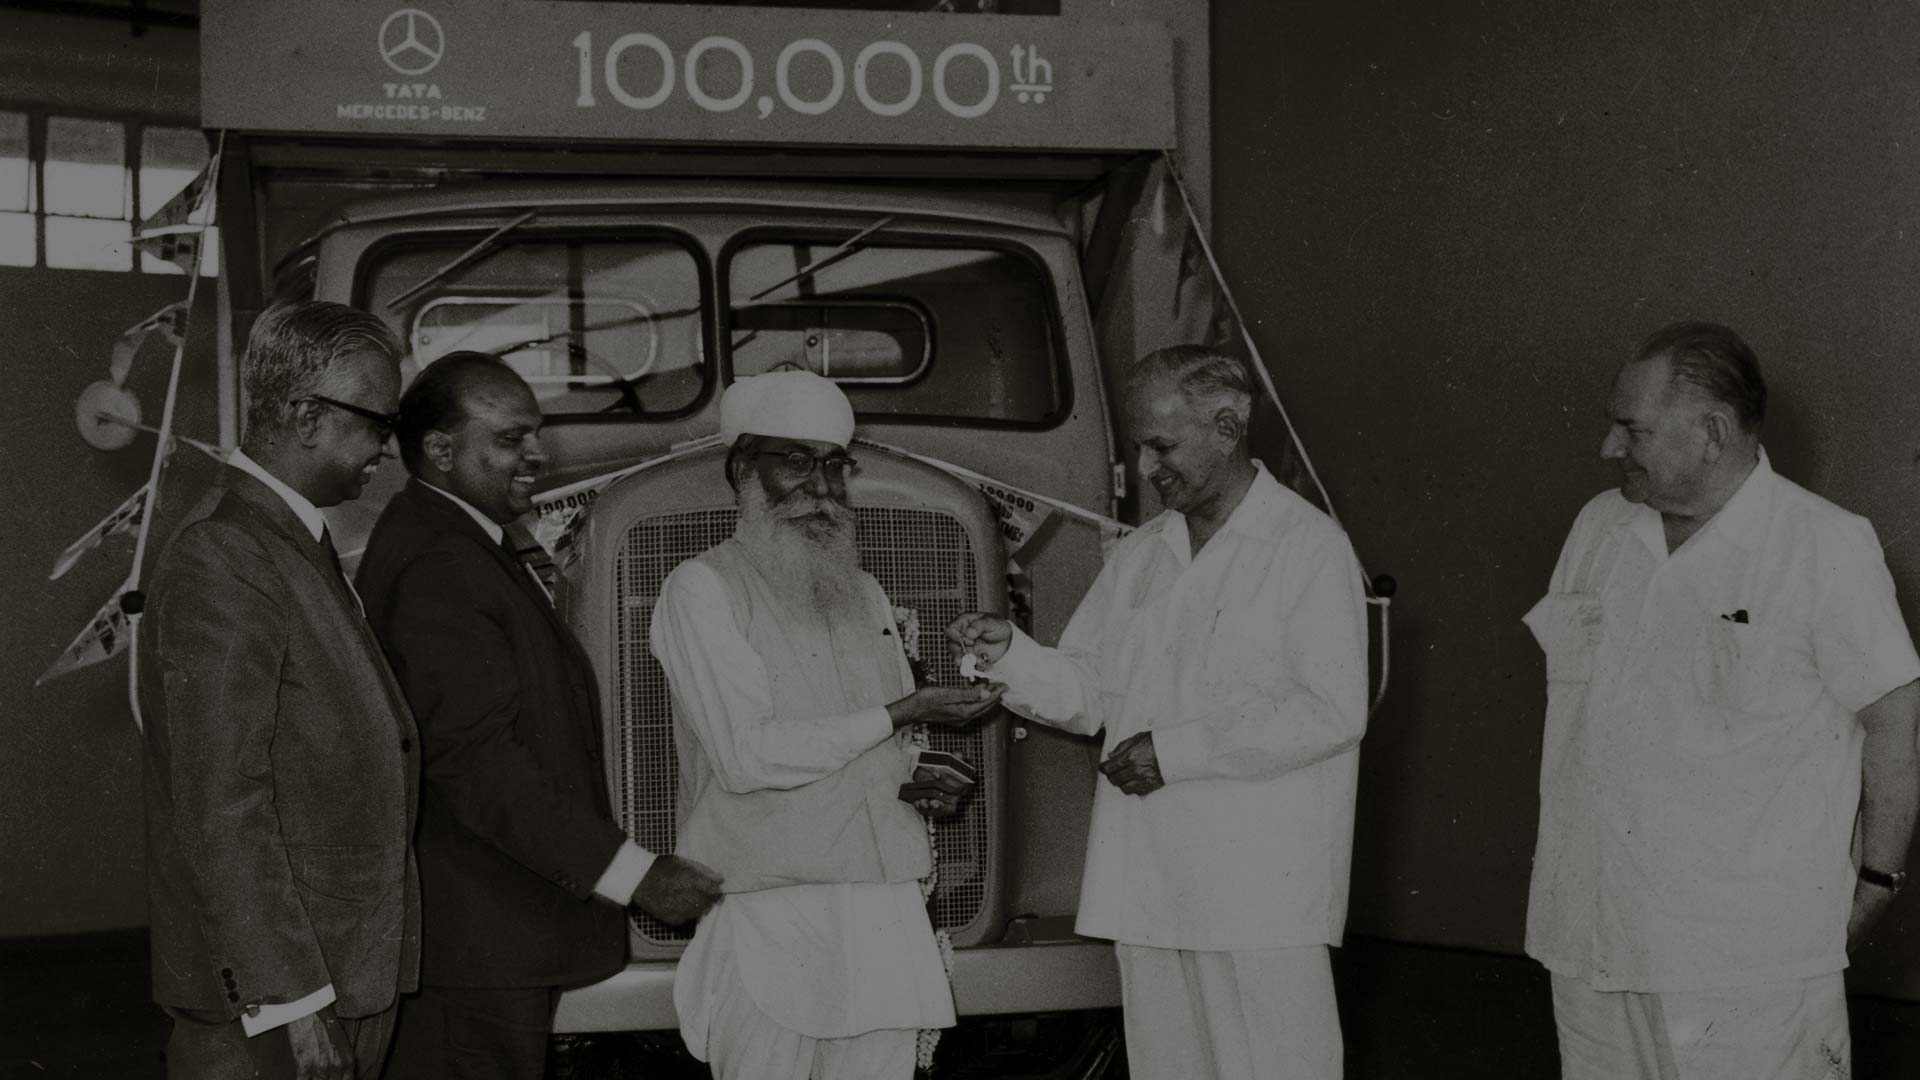 Tata Motors' 100,000th truck